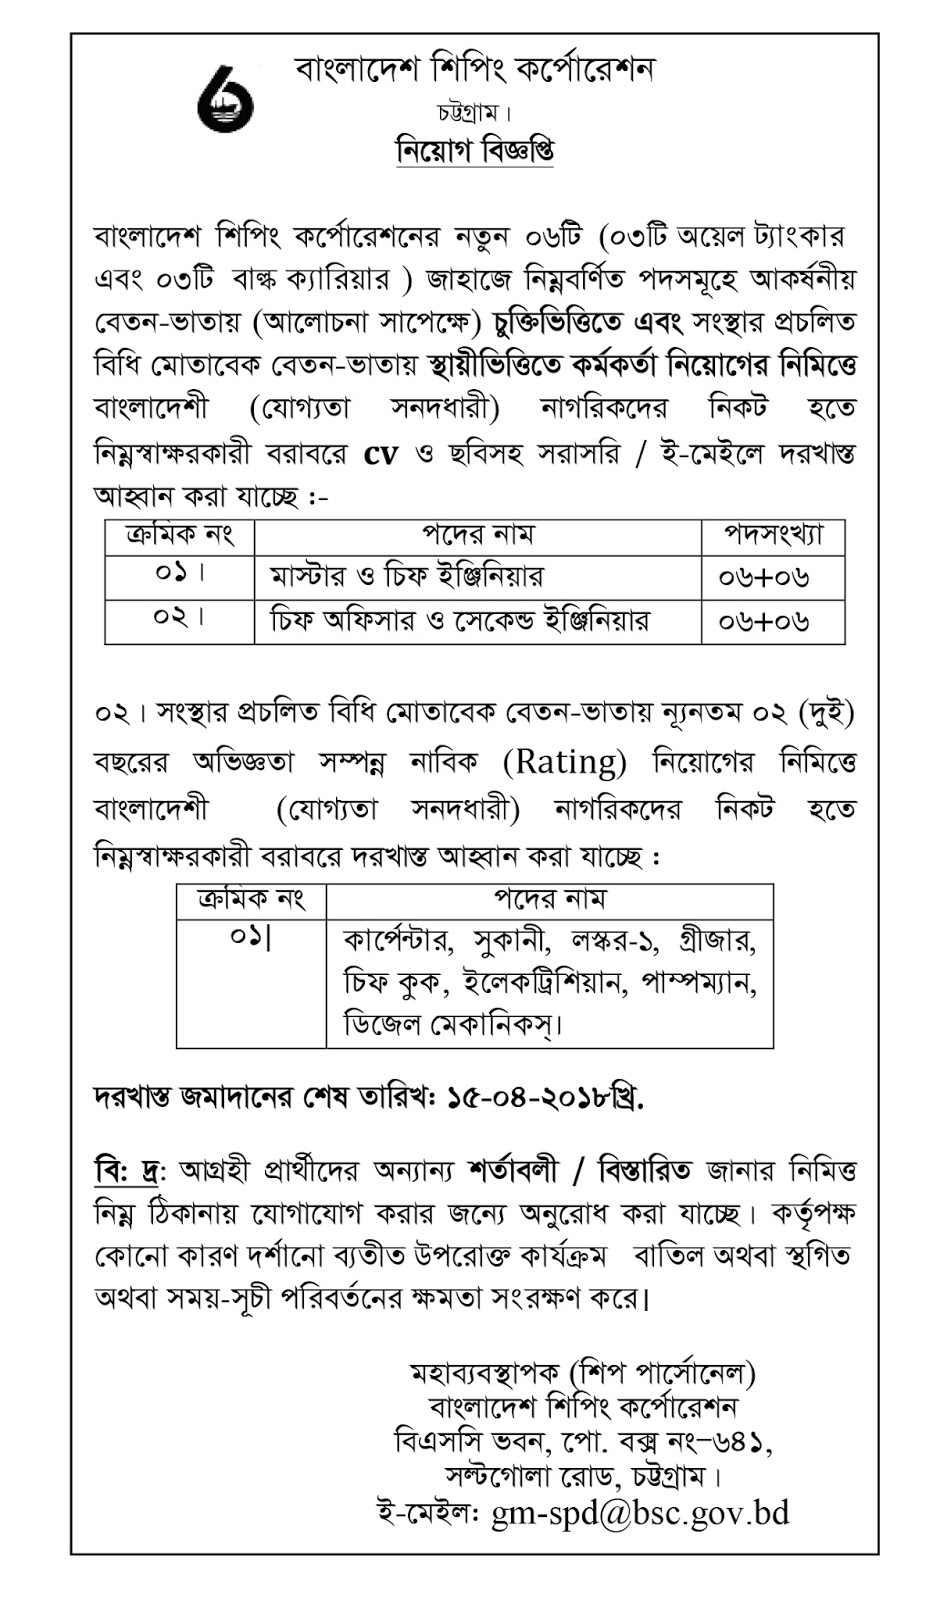 BSC - Bangladesh Shipping Corporation Job Circular 2018